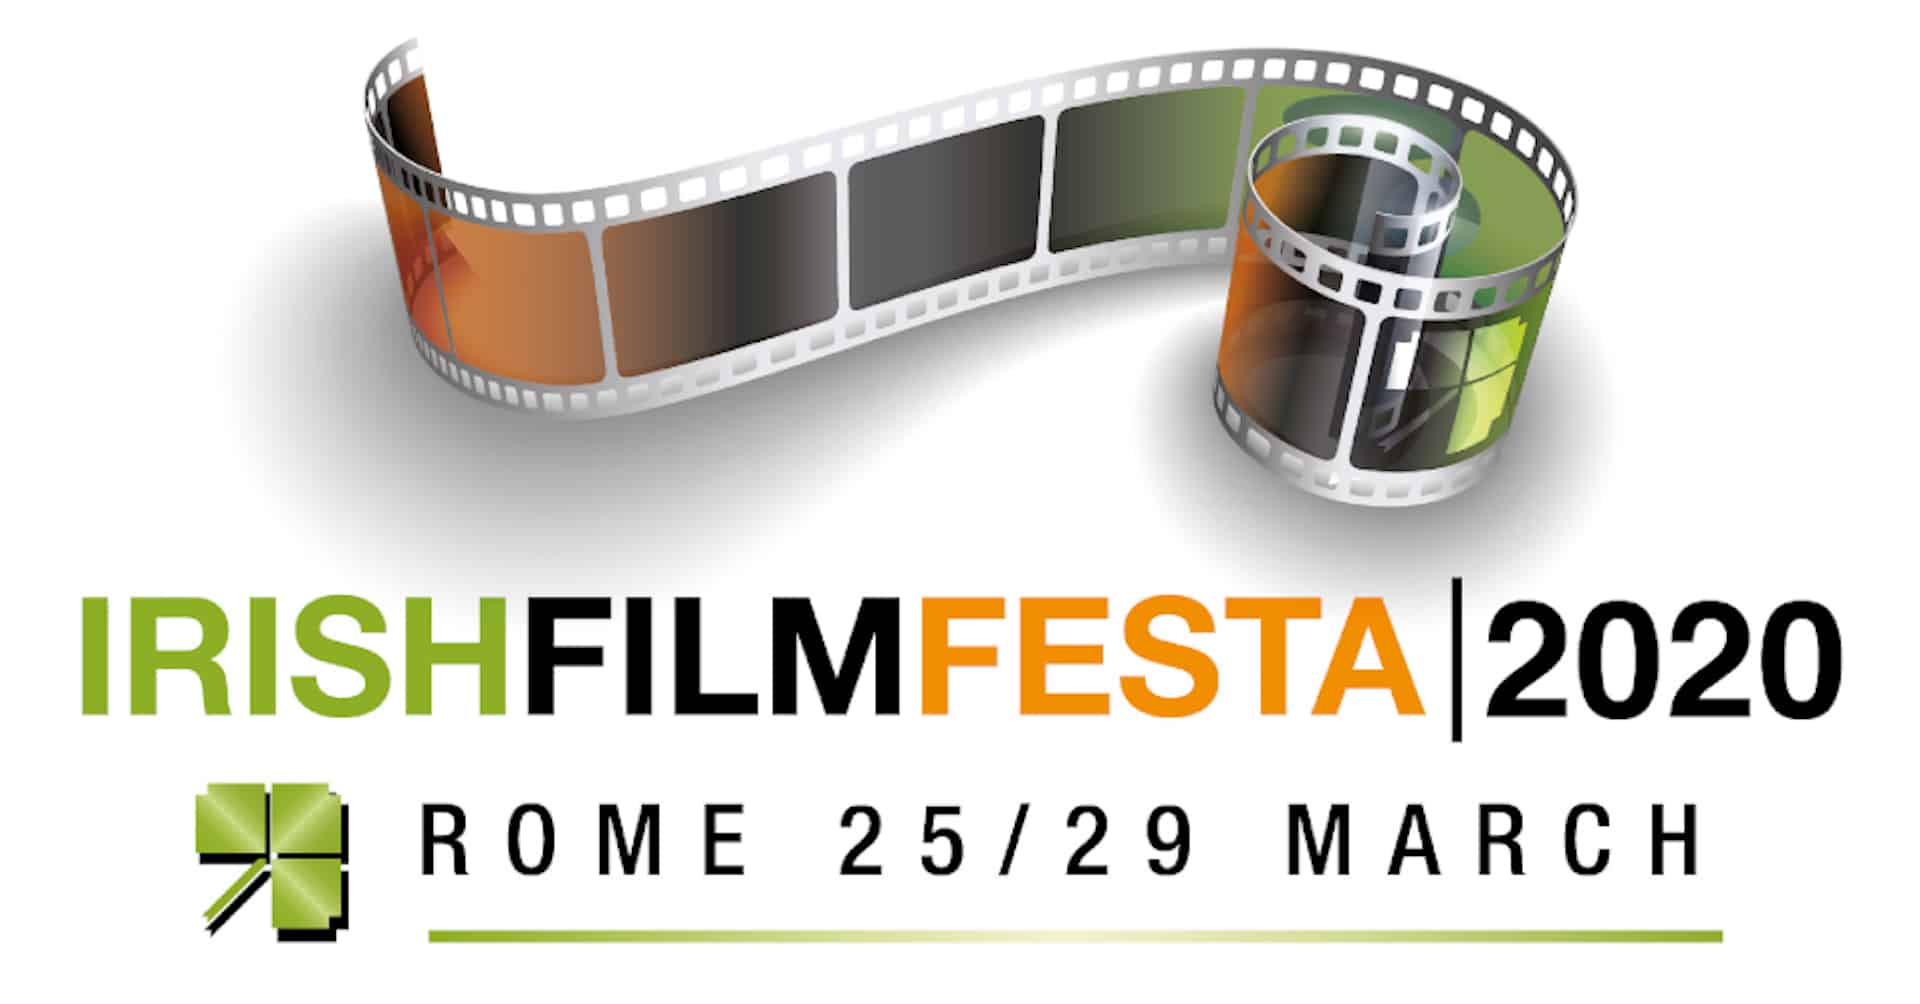 Irish Film Festa 2020: rinviata la 13ª edizione a data da destinarsi